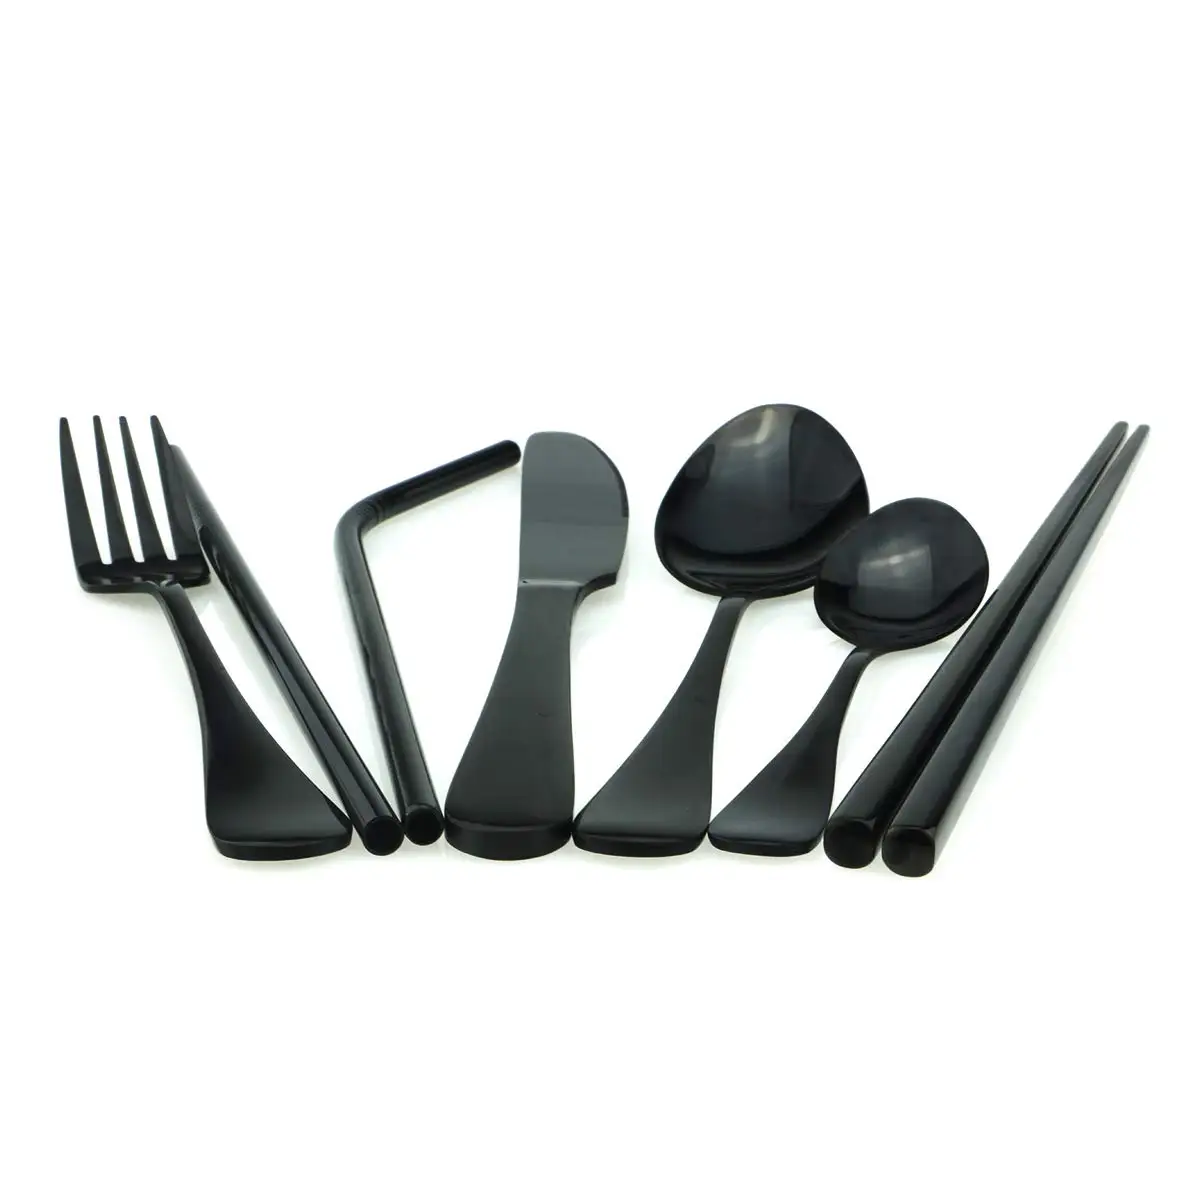 Высококачественный набор столовых приборов из нержавеющей стали 18/8, черный набор посуды, черная посуда, нож, вилка, чайная ложка, палочки для еды, соломинка, мешочек, набор